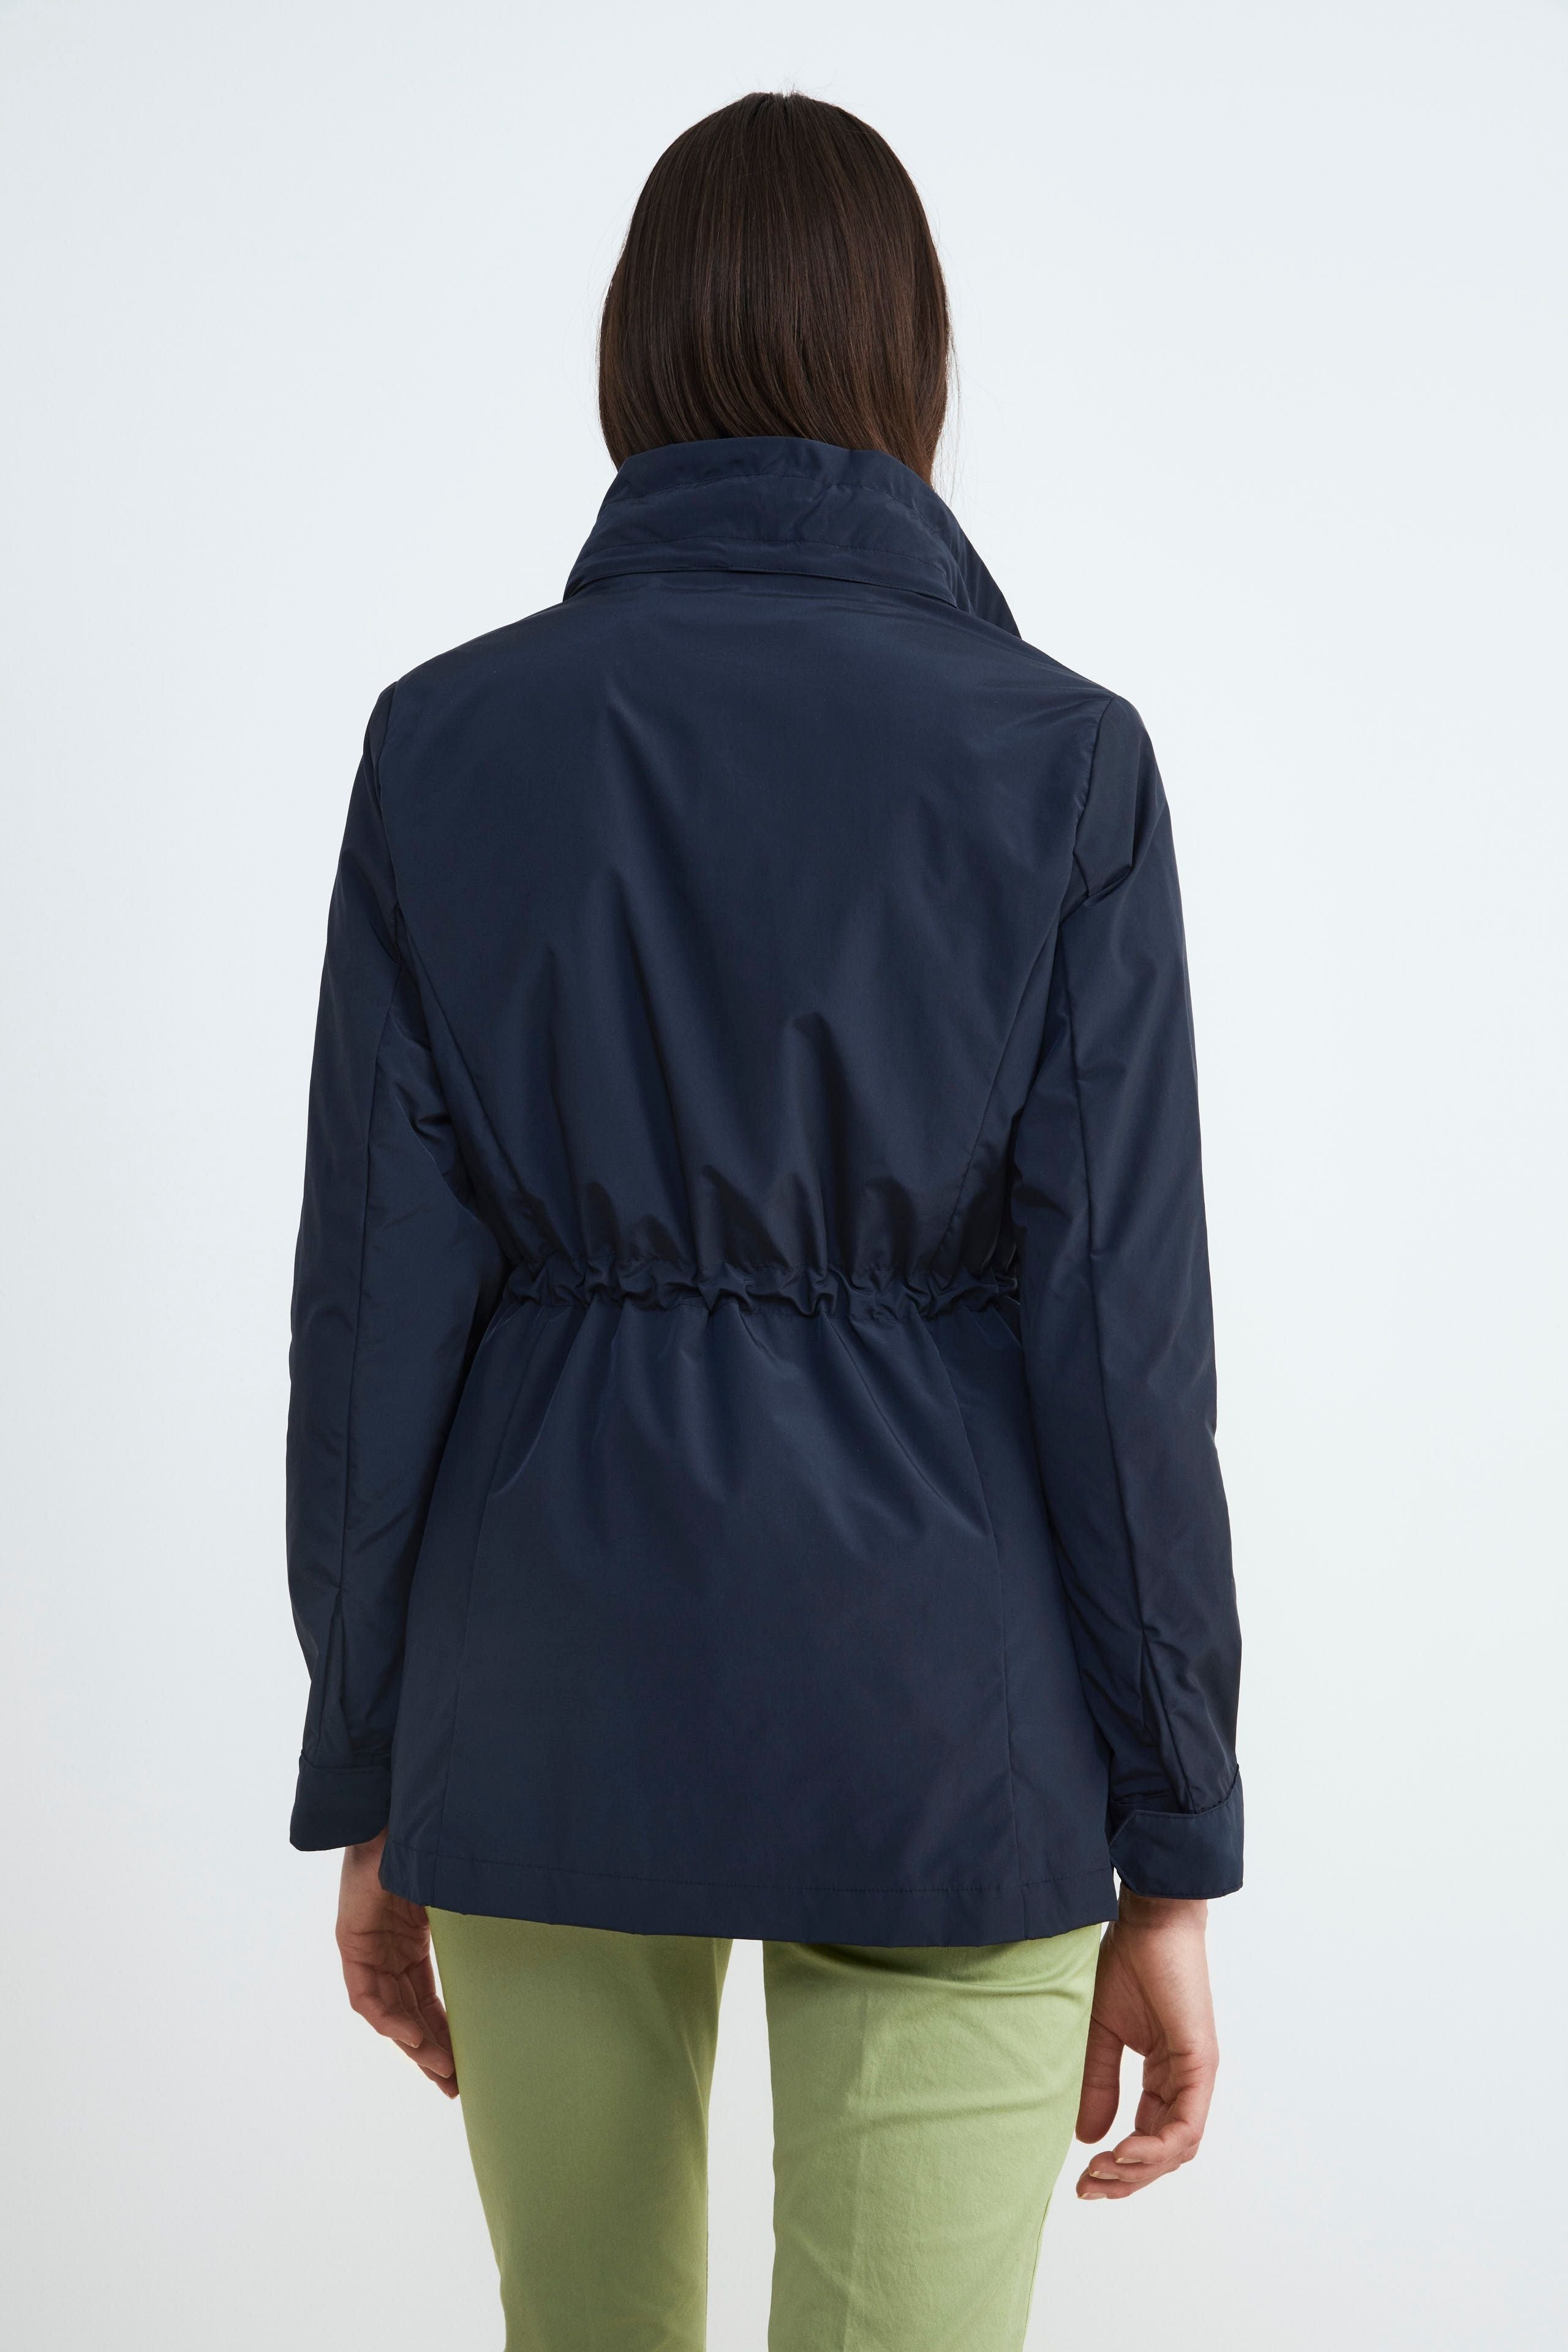 Women’s short trench coat - Navy blue